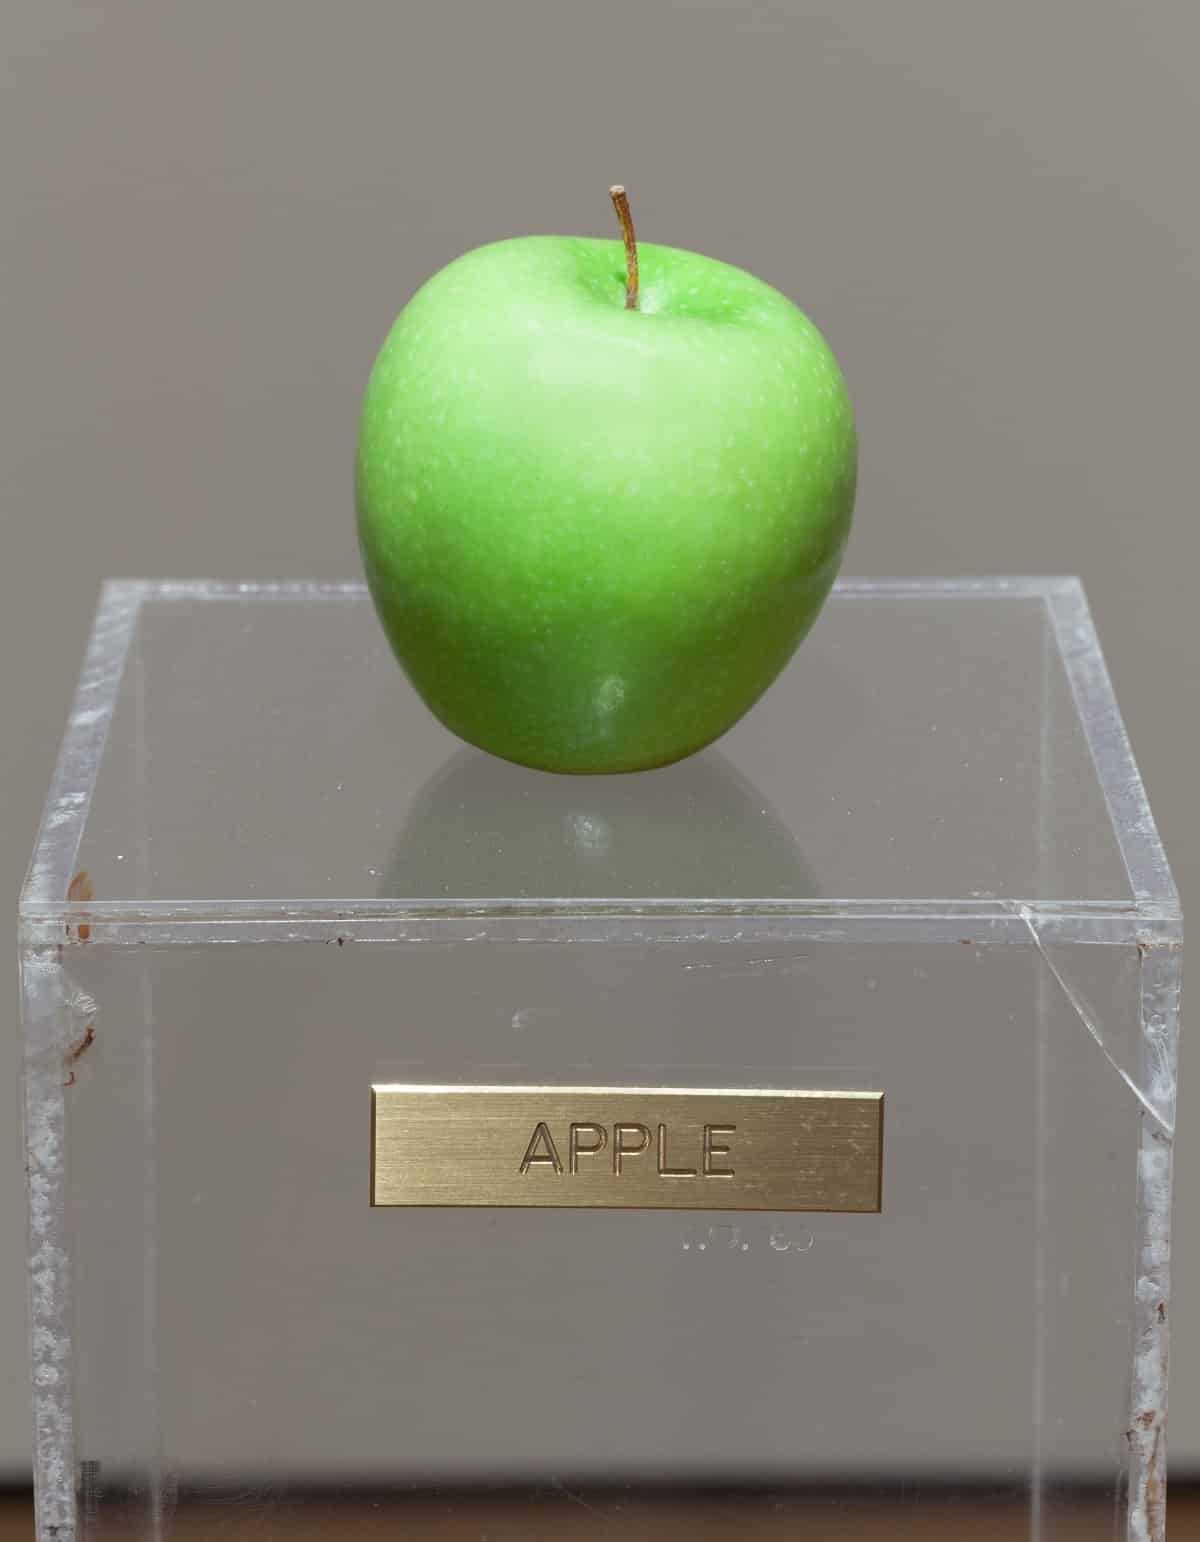 Apple by Yoko Ono